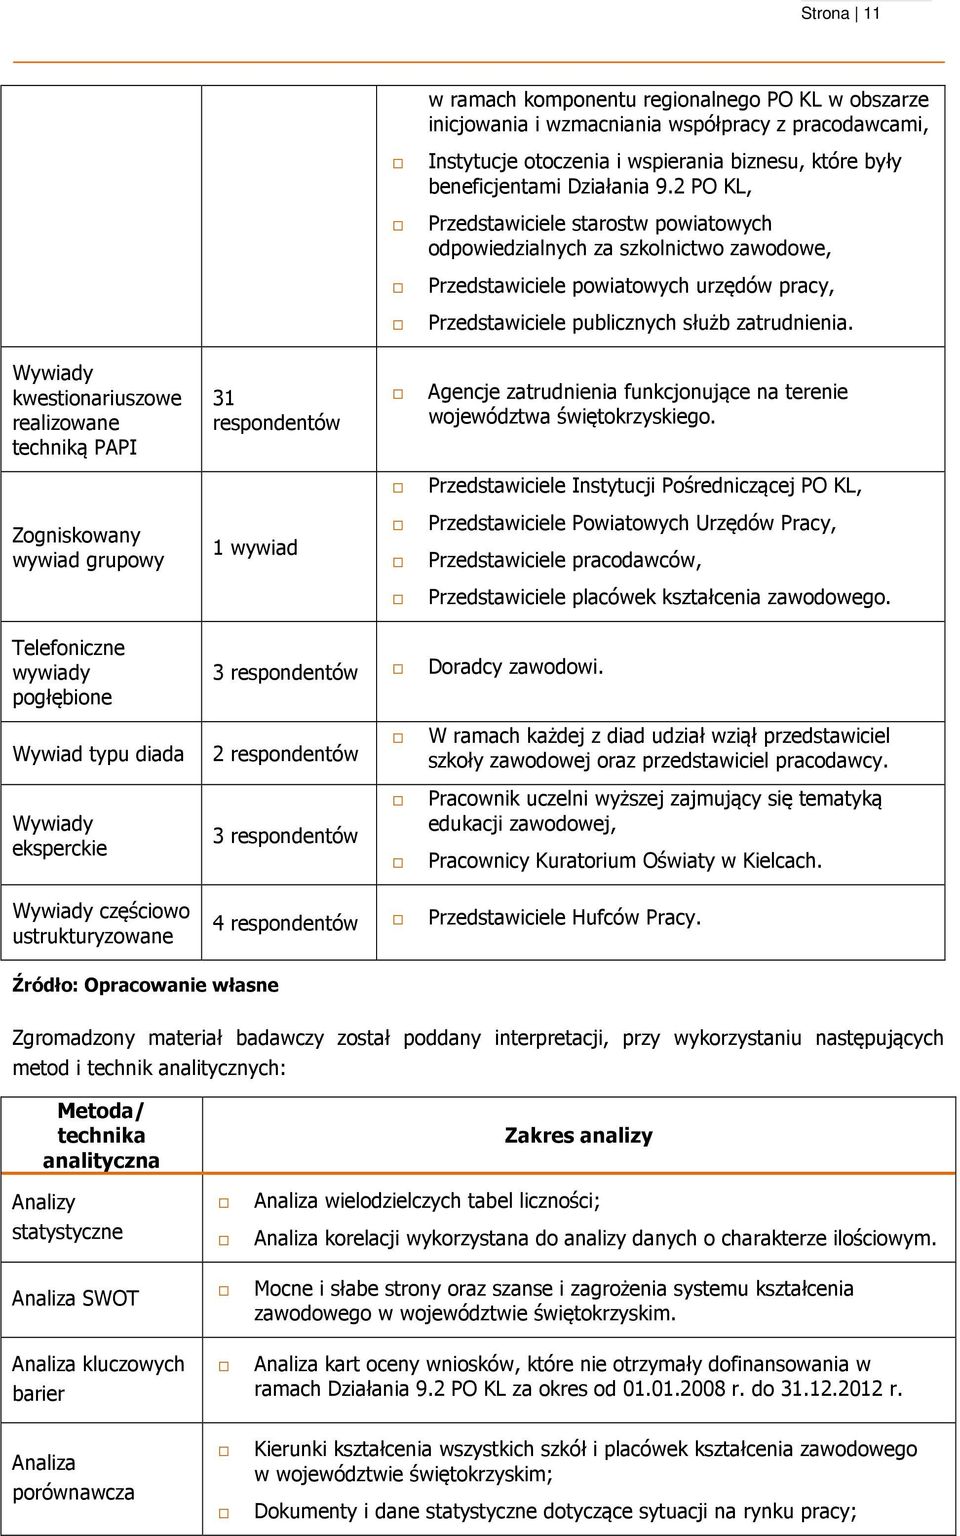 Wywiady kwestionariuszowe realizowane techniką PAPI 31 respondentów Agencje zatrudnienia funkcjonujące na terenie województwa świętokrzyskiego.